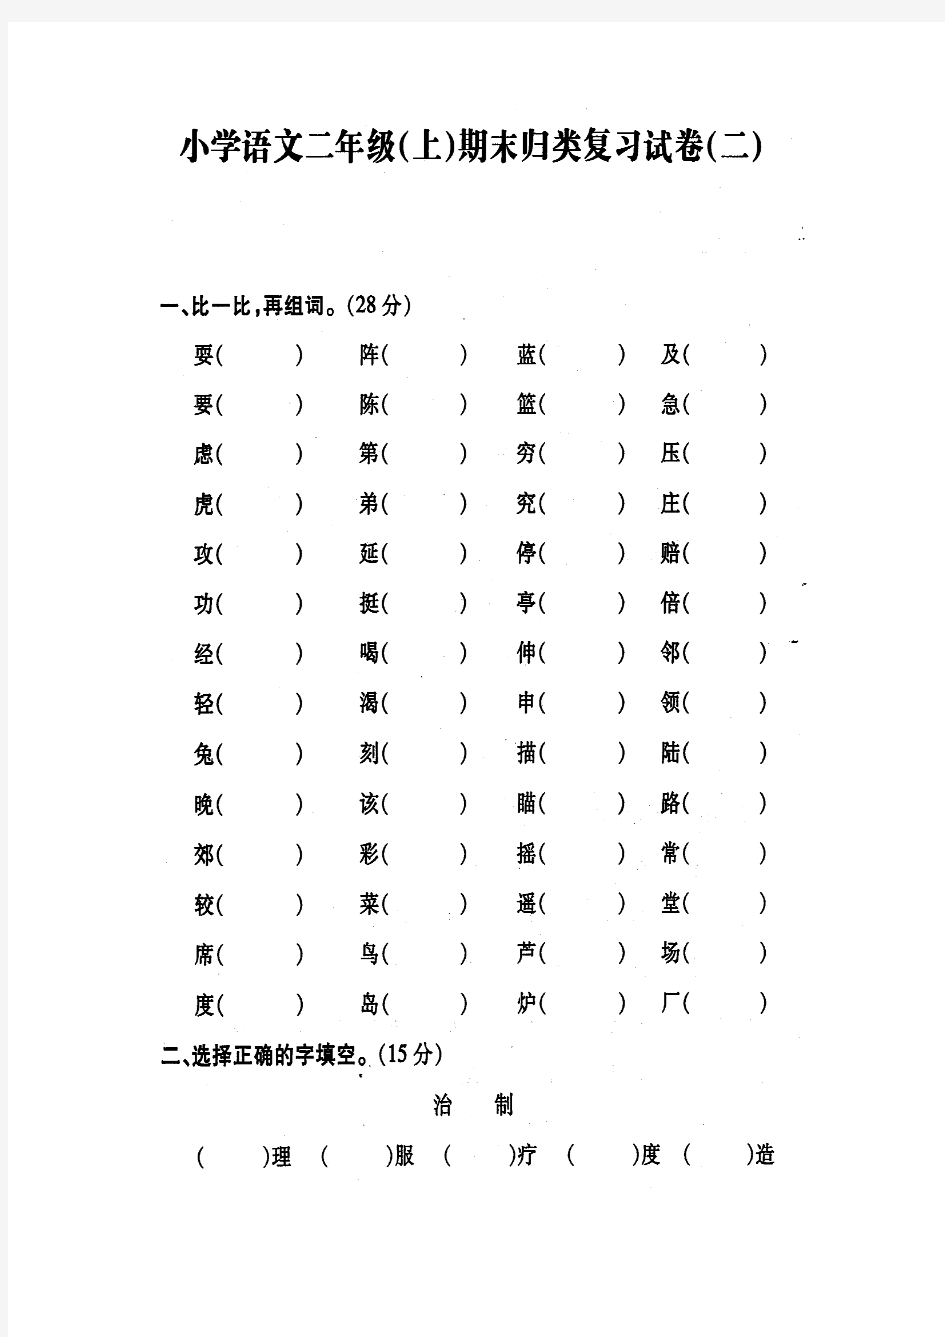 苏教版 二年级语文(上) 期末归类复习系统试卷二